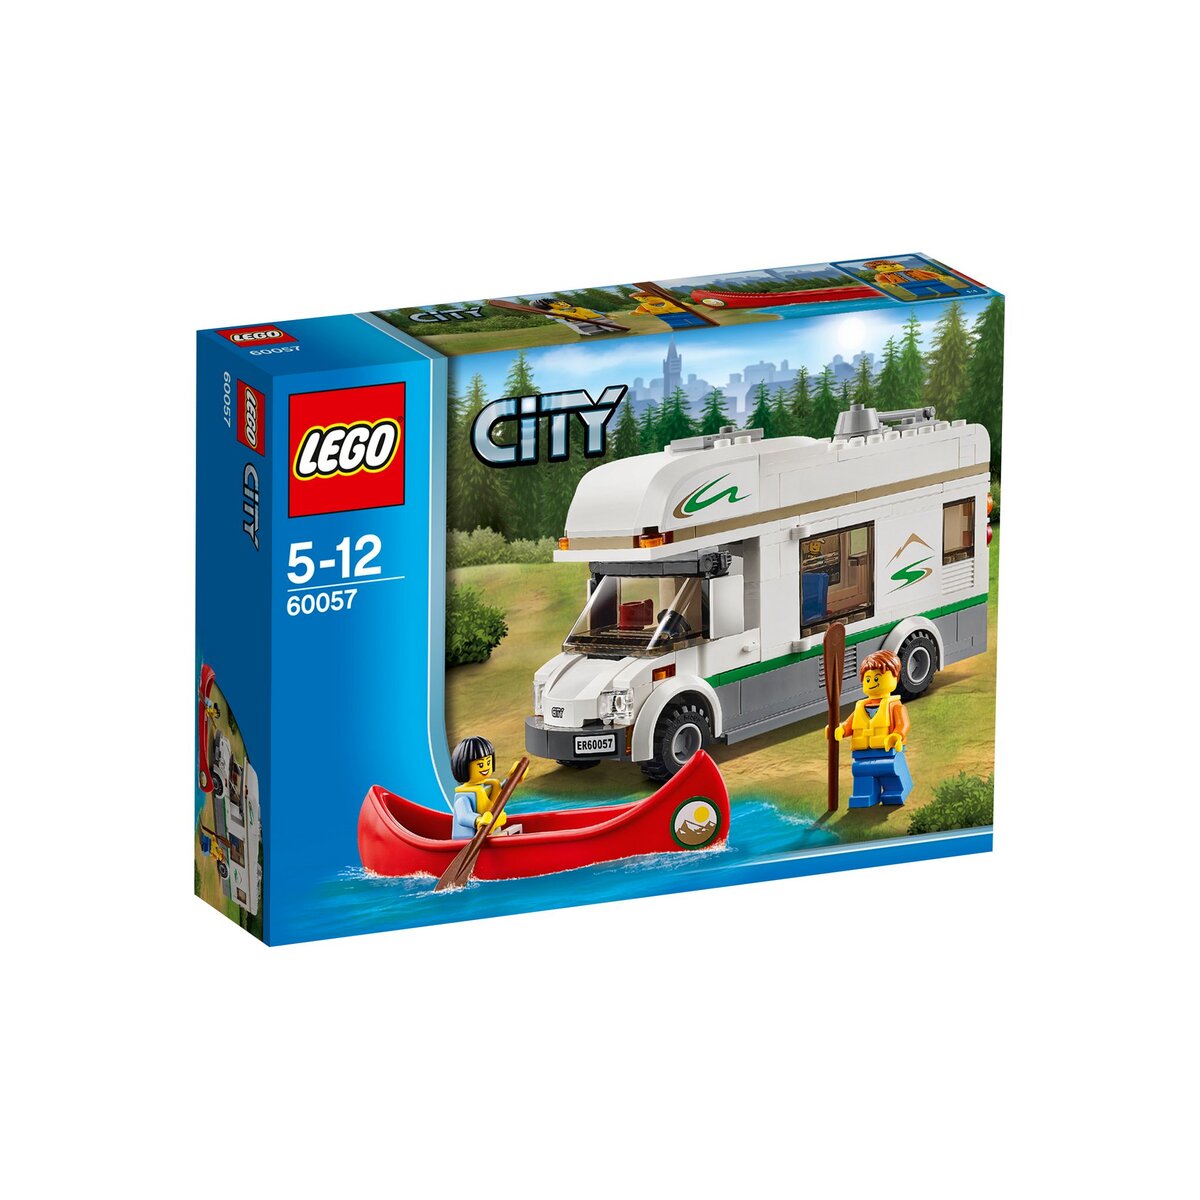 LEGO City 60057